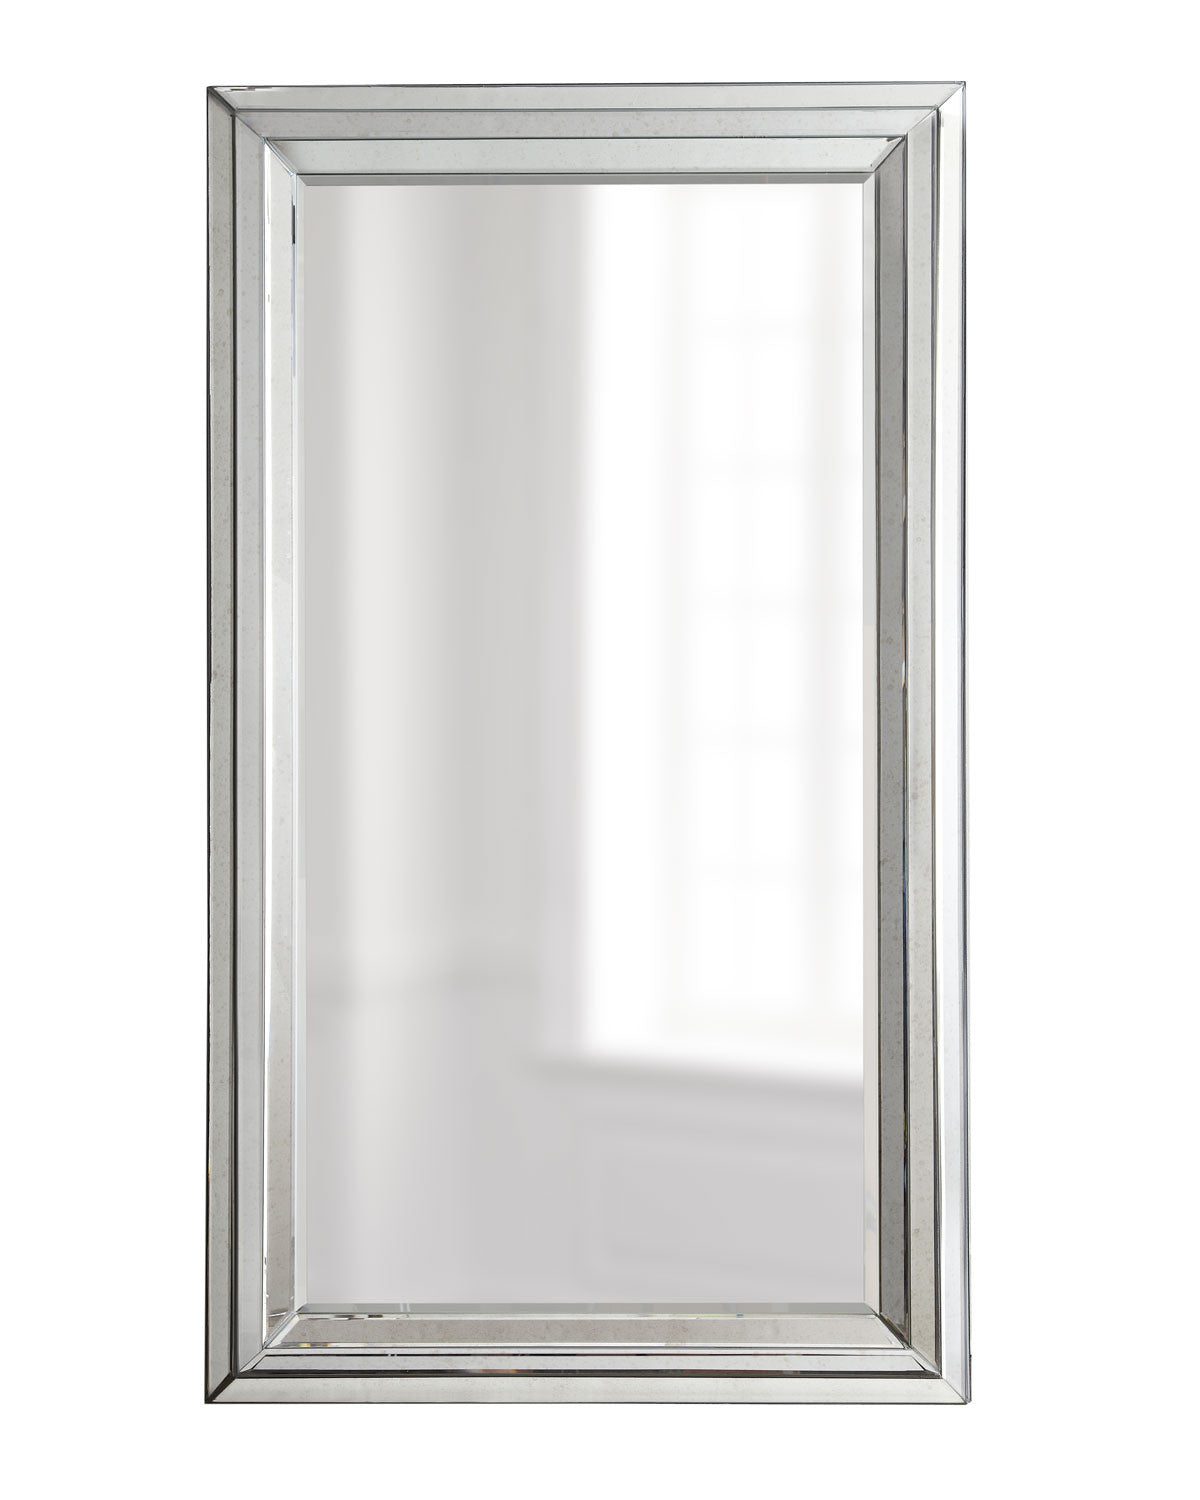 Прямоугольное напольное зеркало "Арлингтон" (на белом фоне)